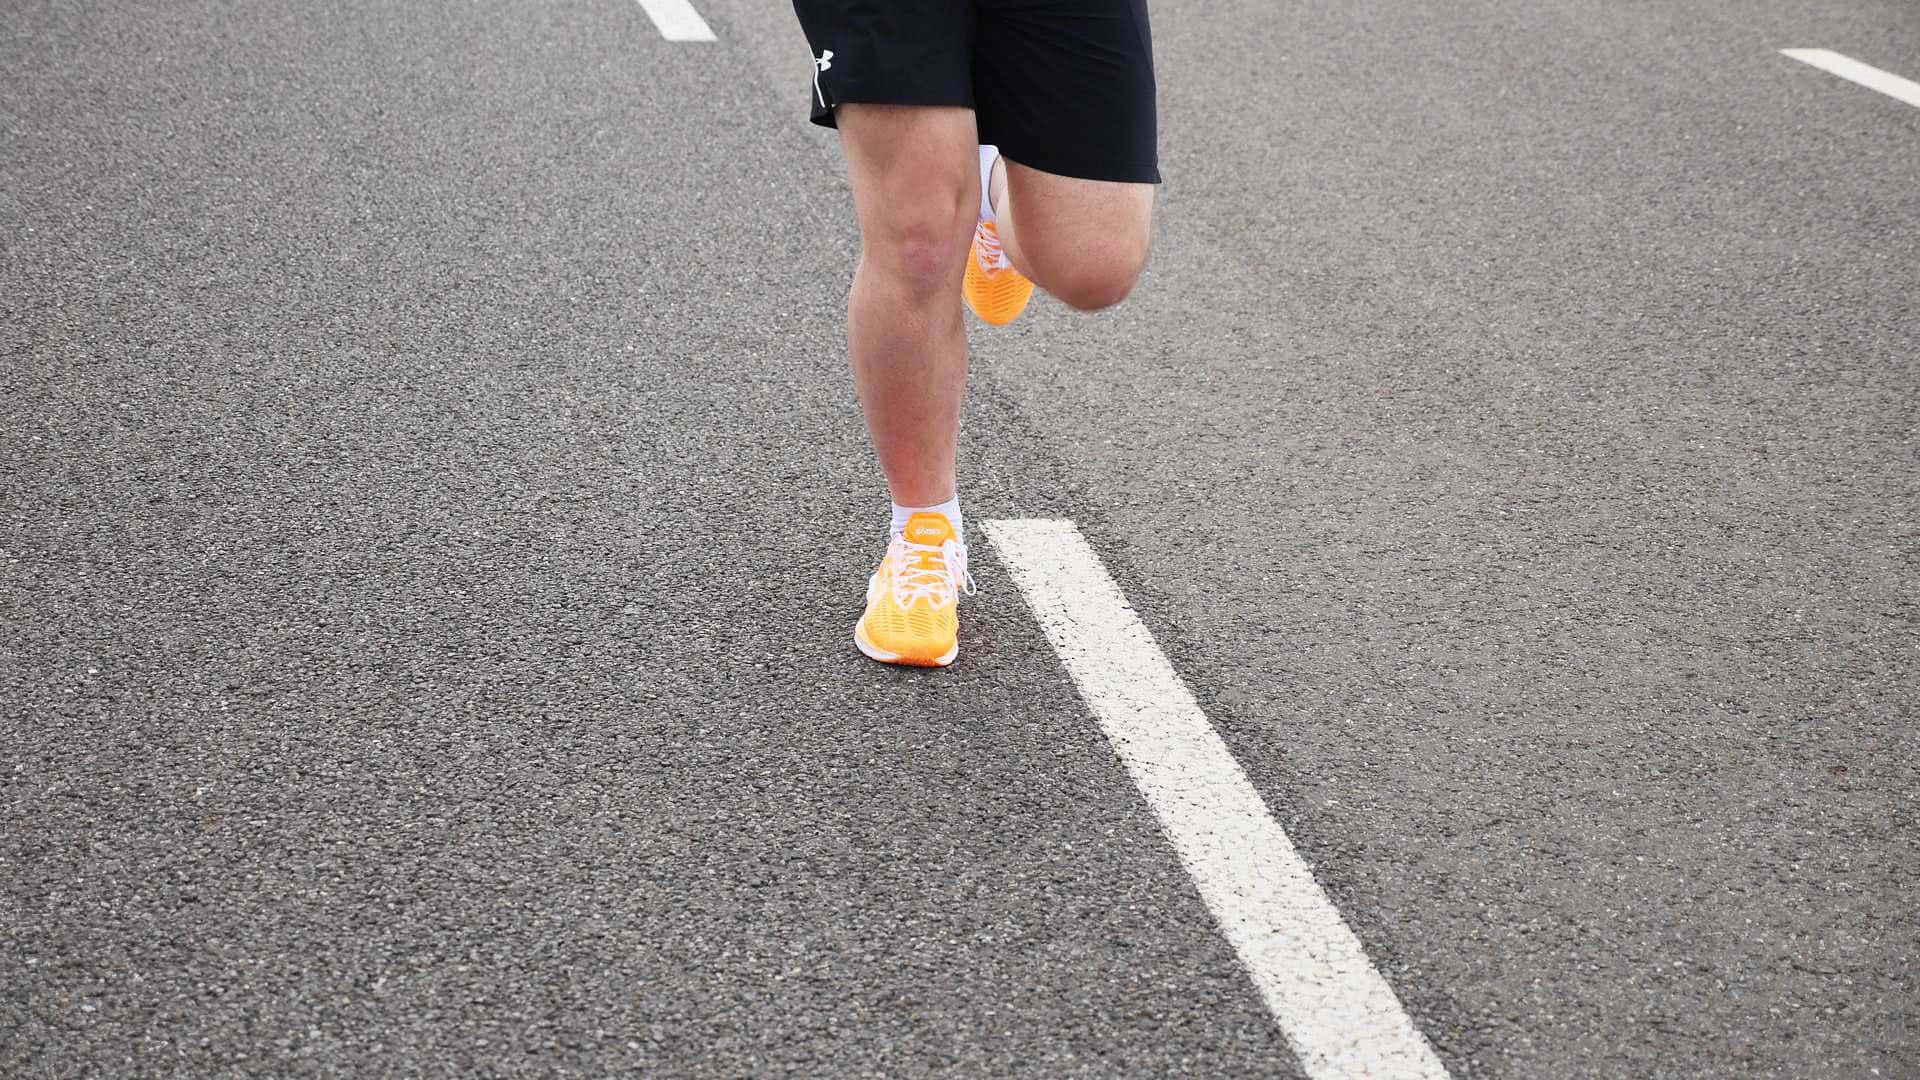 ASICS NOVABLAST - treningowe buty do biegania po asfalcie